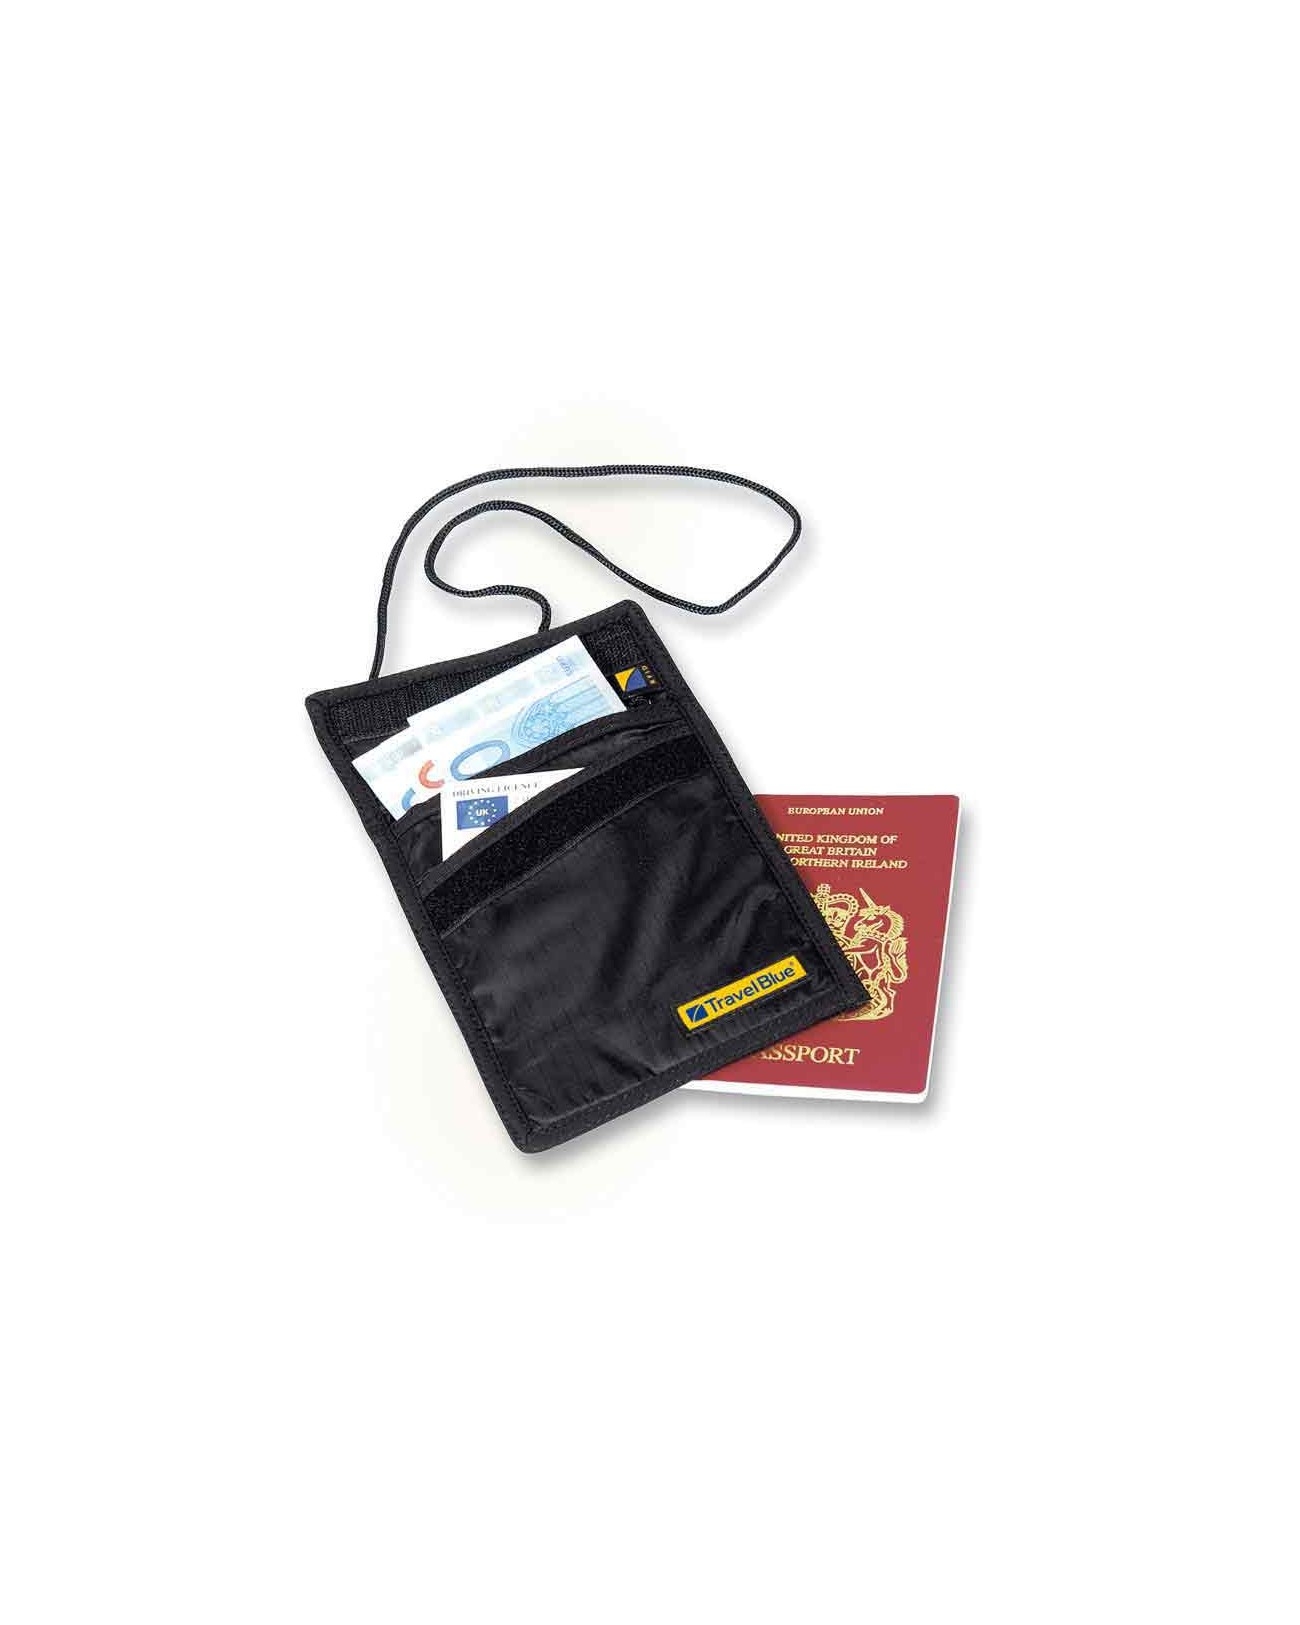 RFID blocco portafoglio collo portamonete custodia passaporto copertura  donna uomo documento contanti porta carte di credito borsa per soldi  accessori da viaggio - AliExpress